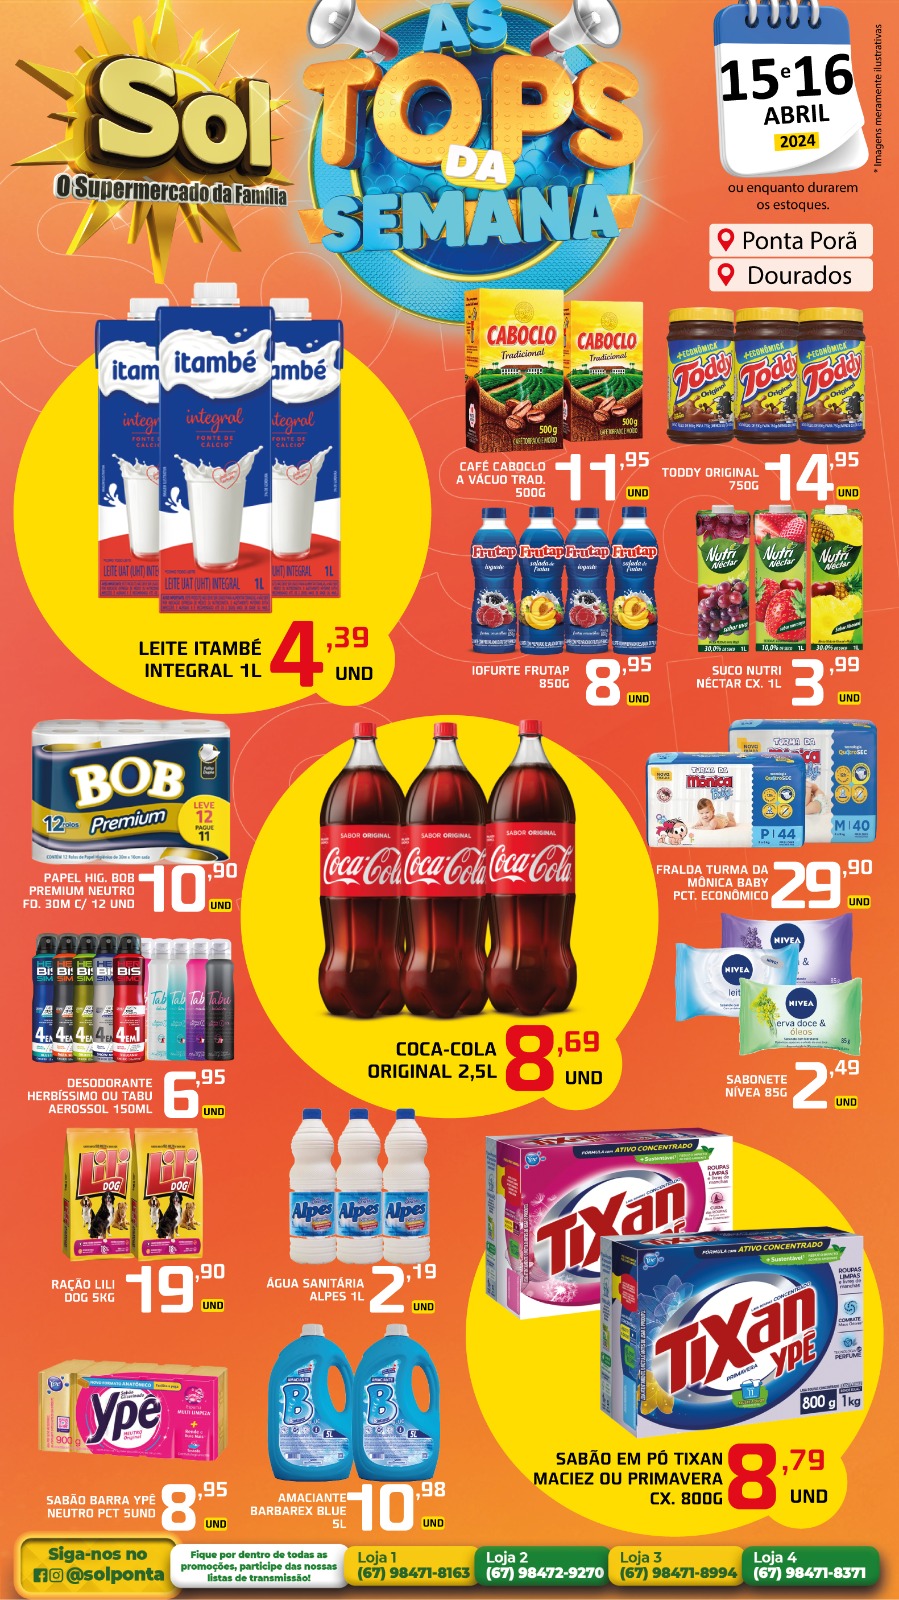 Confira as ofertas Top da Semana do supermercado Sol